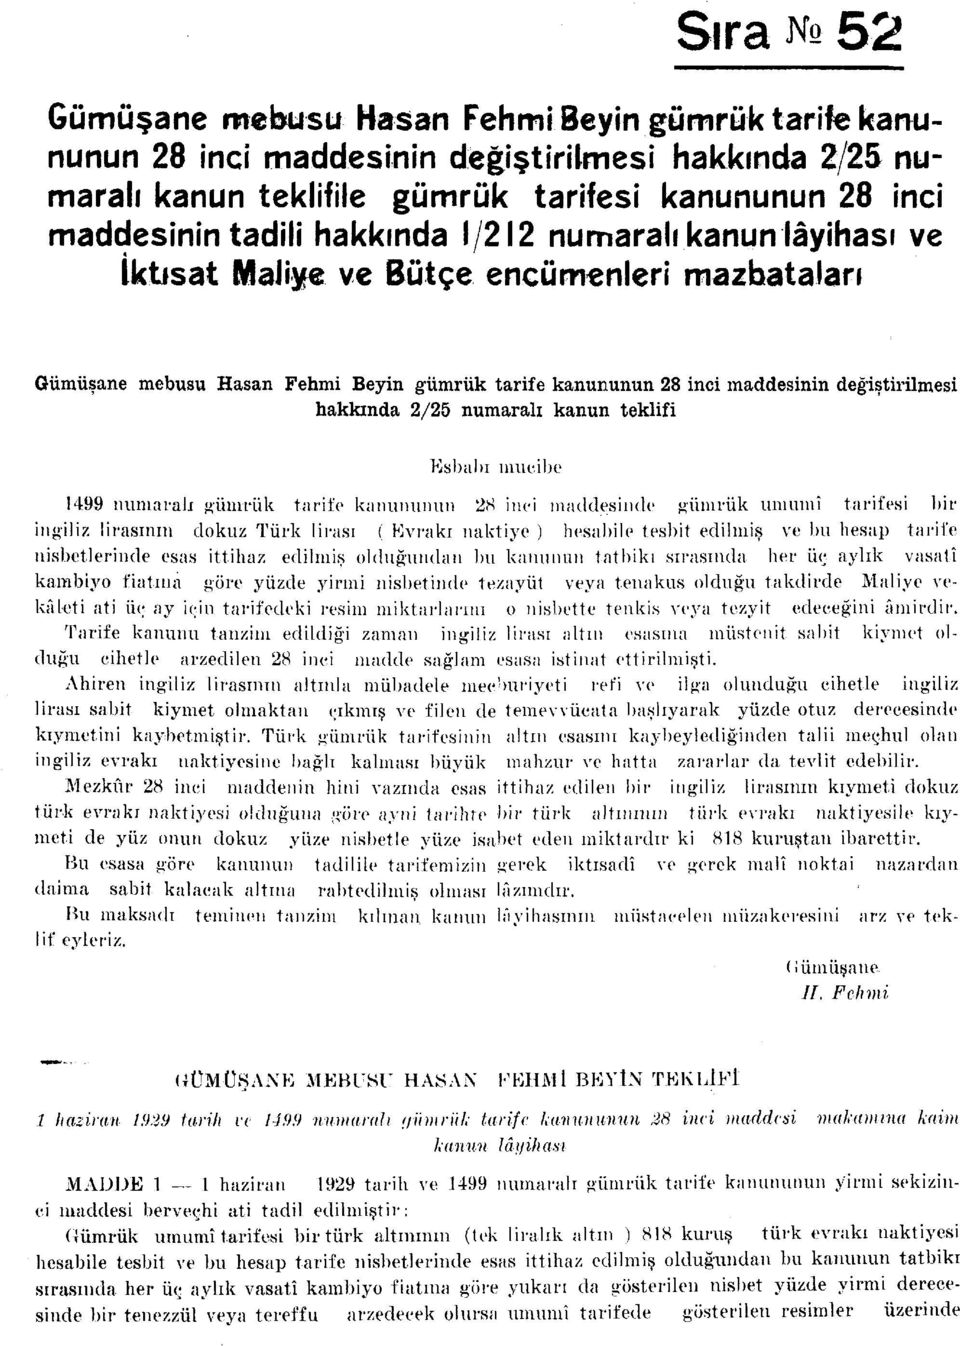 numaralı kanun teklifi Esbabı mucibe 1499 numaralı gümrük tarife kanununun 2S inci maddesinde gümrük umumî tarifesi bir ingiliz lirasının dokuz Türk lirası ( Evrakı naktiye ) hesabile tesbit edilmiş